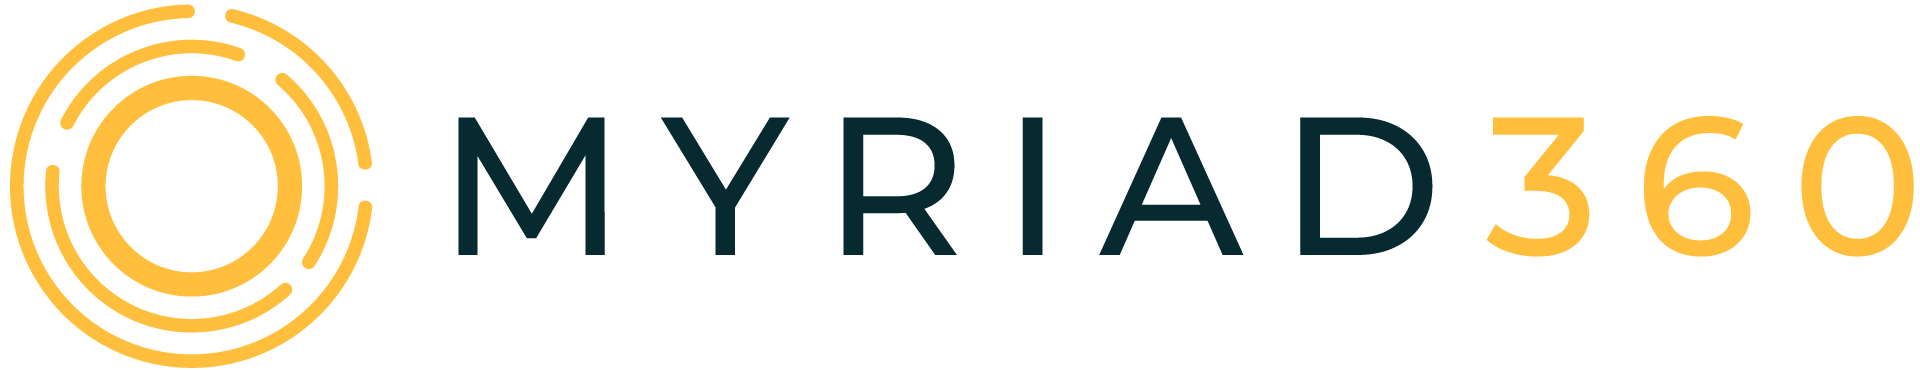 MYRIAD360-logo-positive-RGB-1